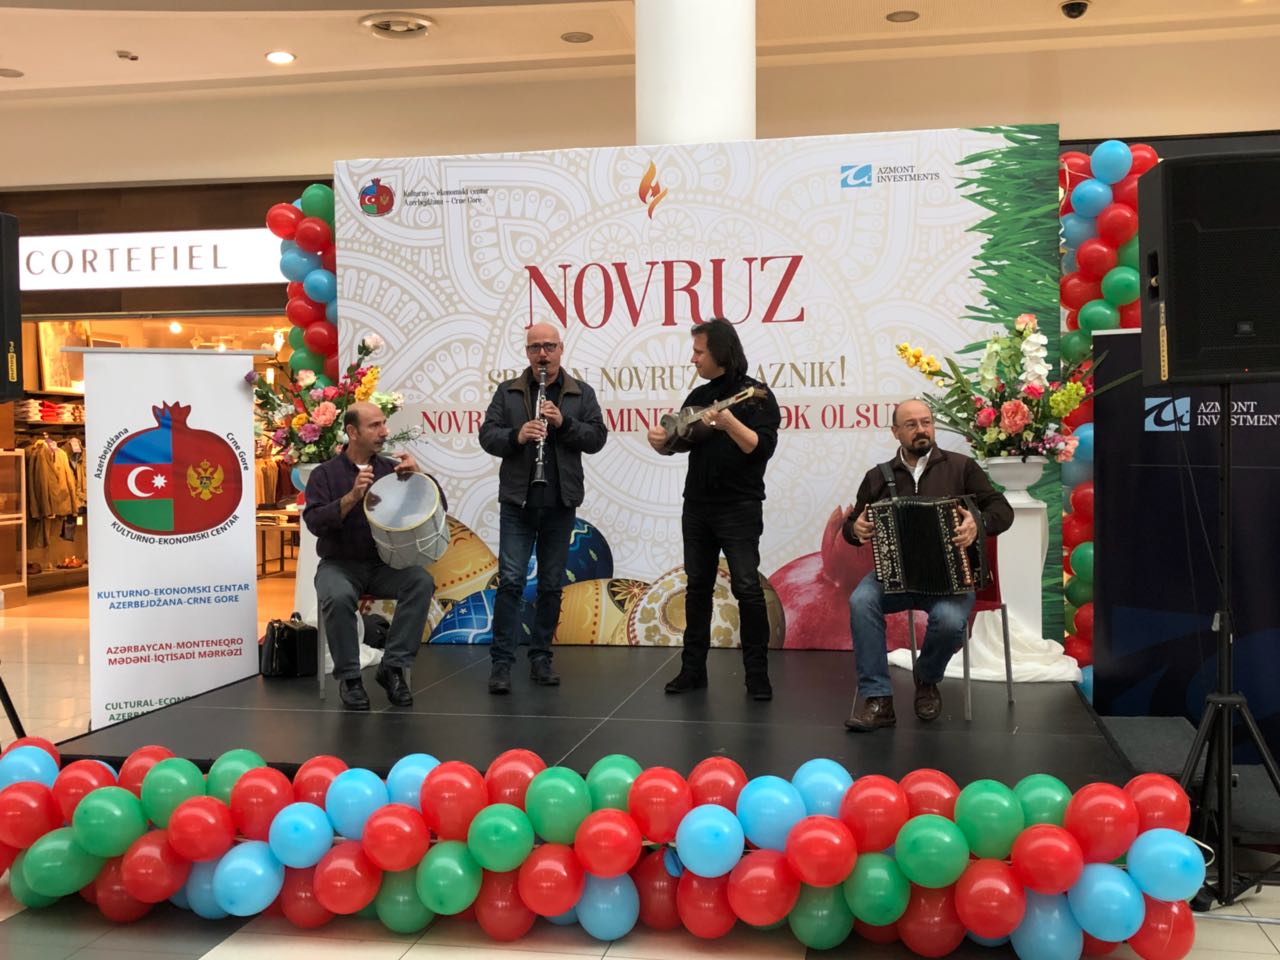 Novruz praznik - 2018 